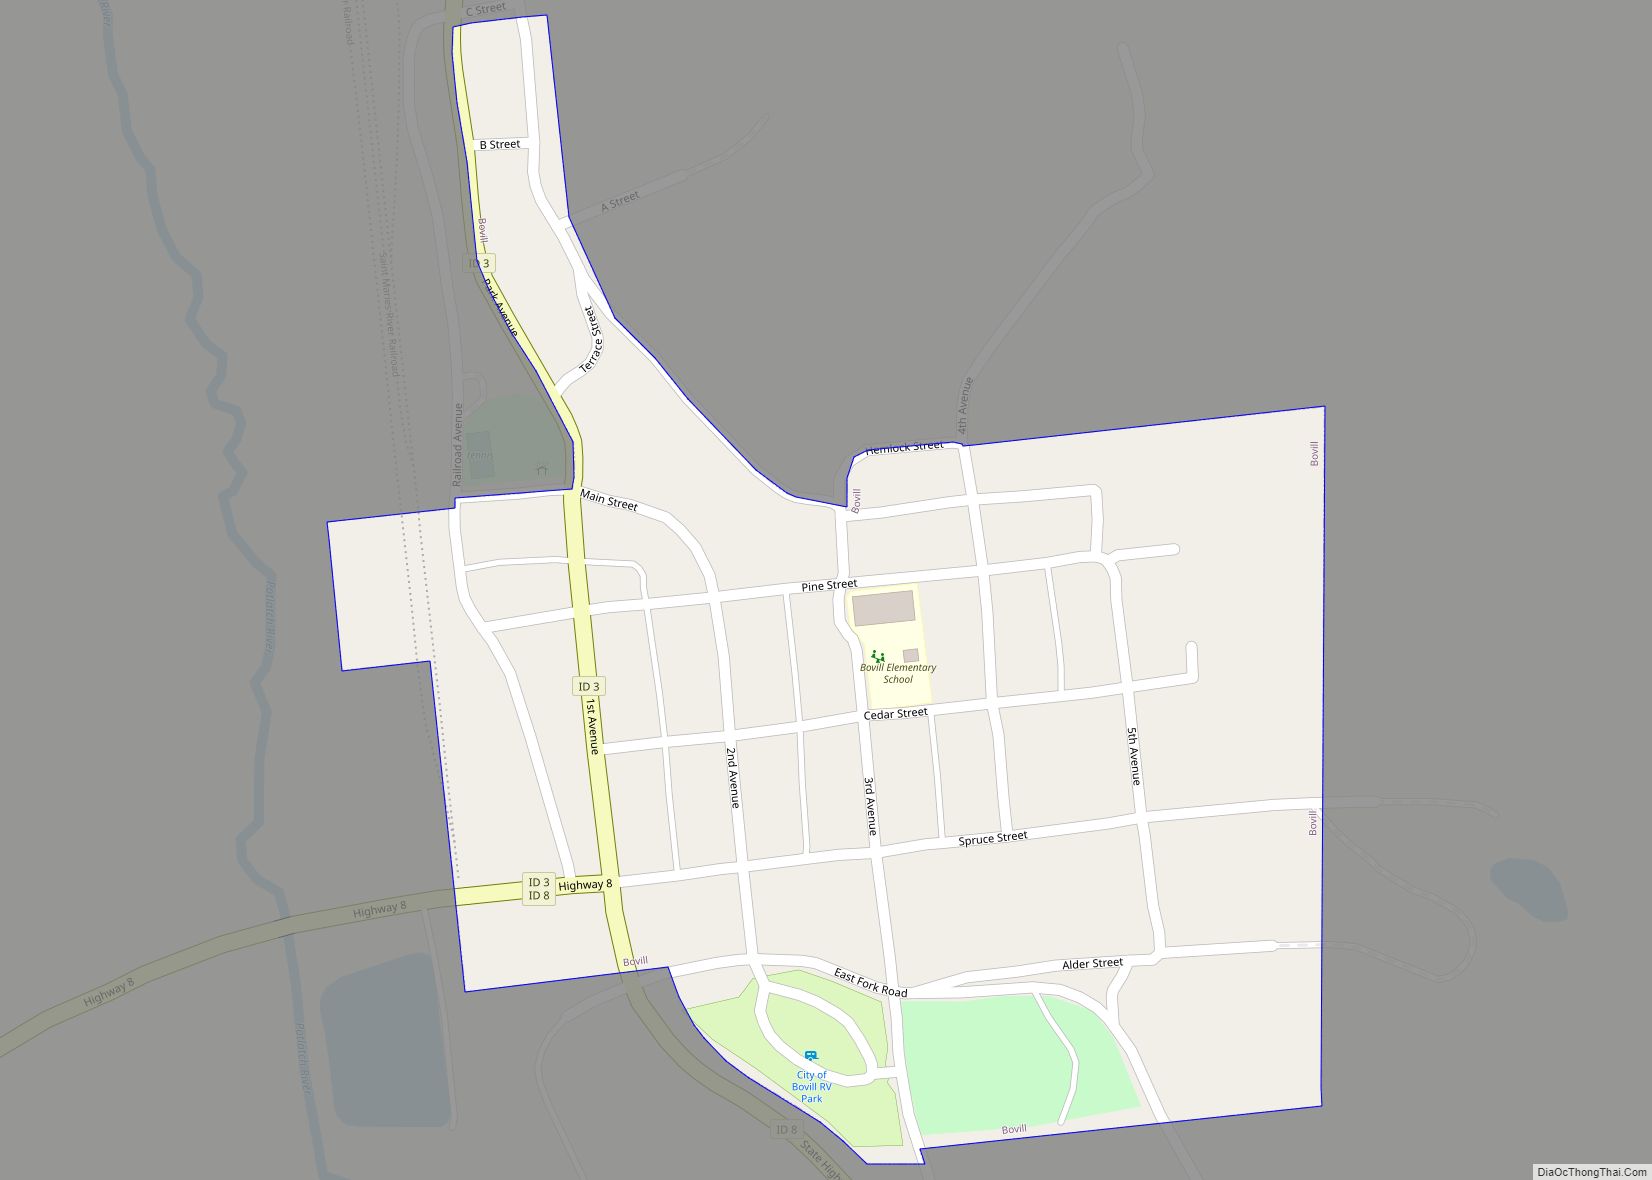 Map of Bovill city